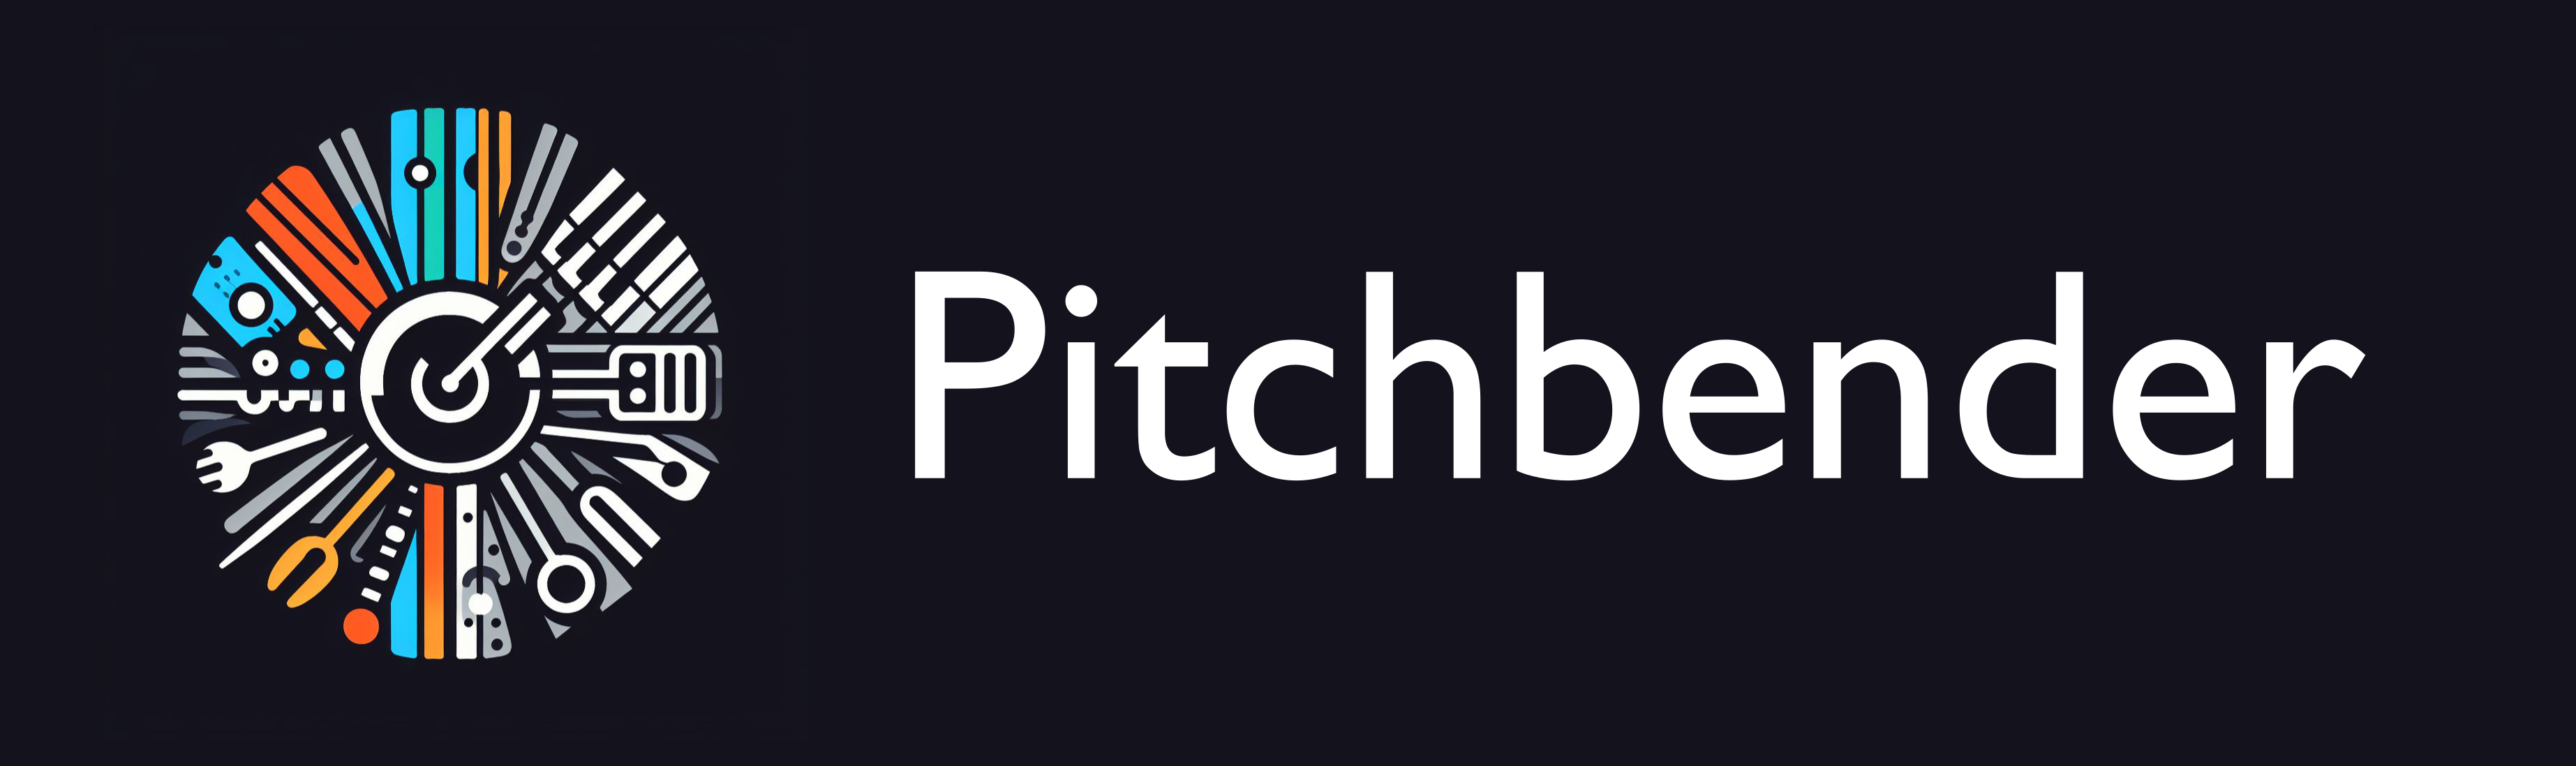 Pitchbender logo